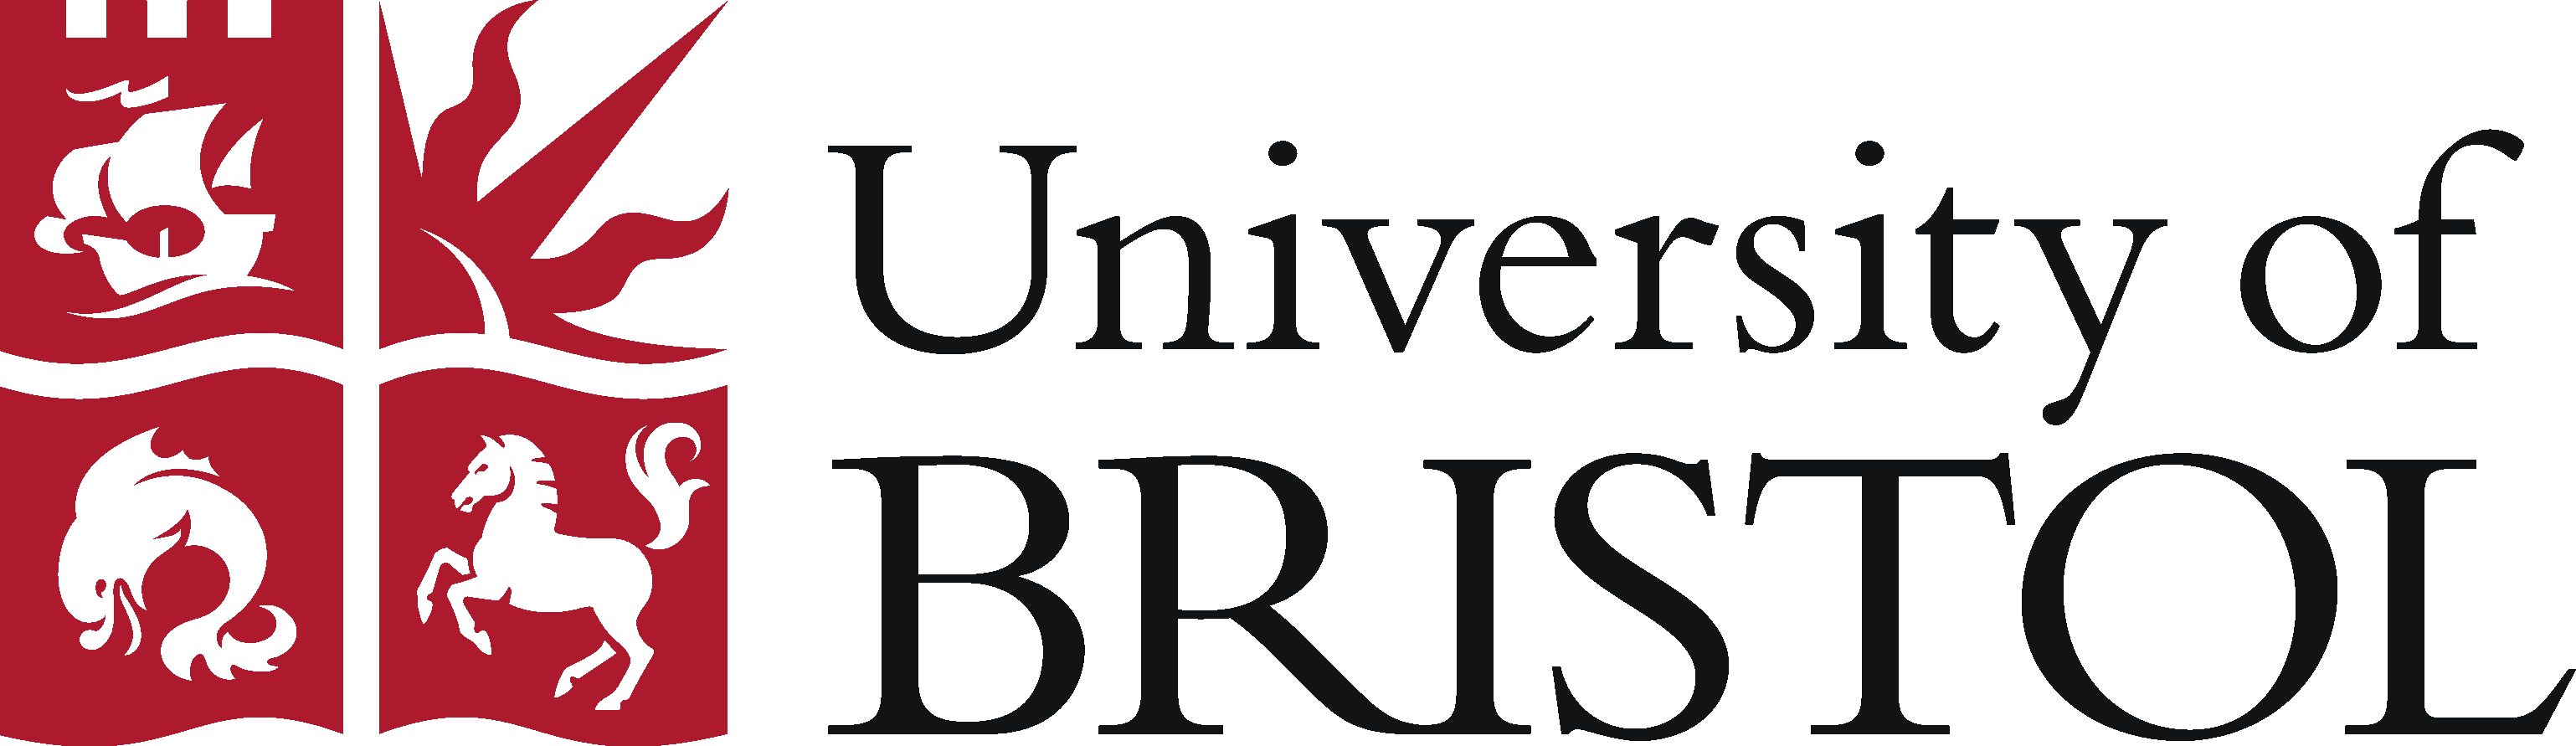 University of Bristol Logo photo - 1